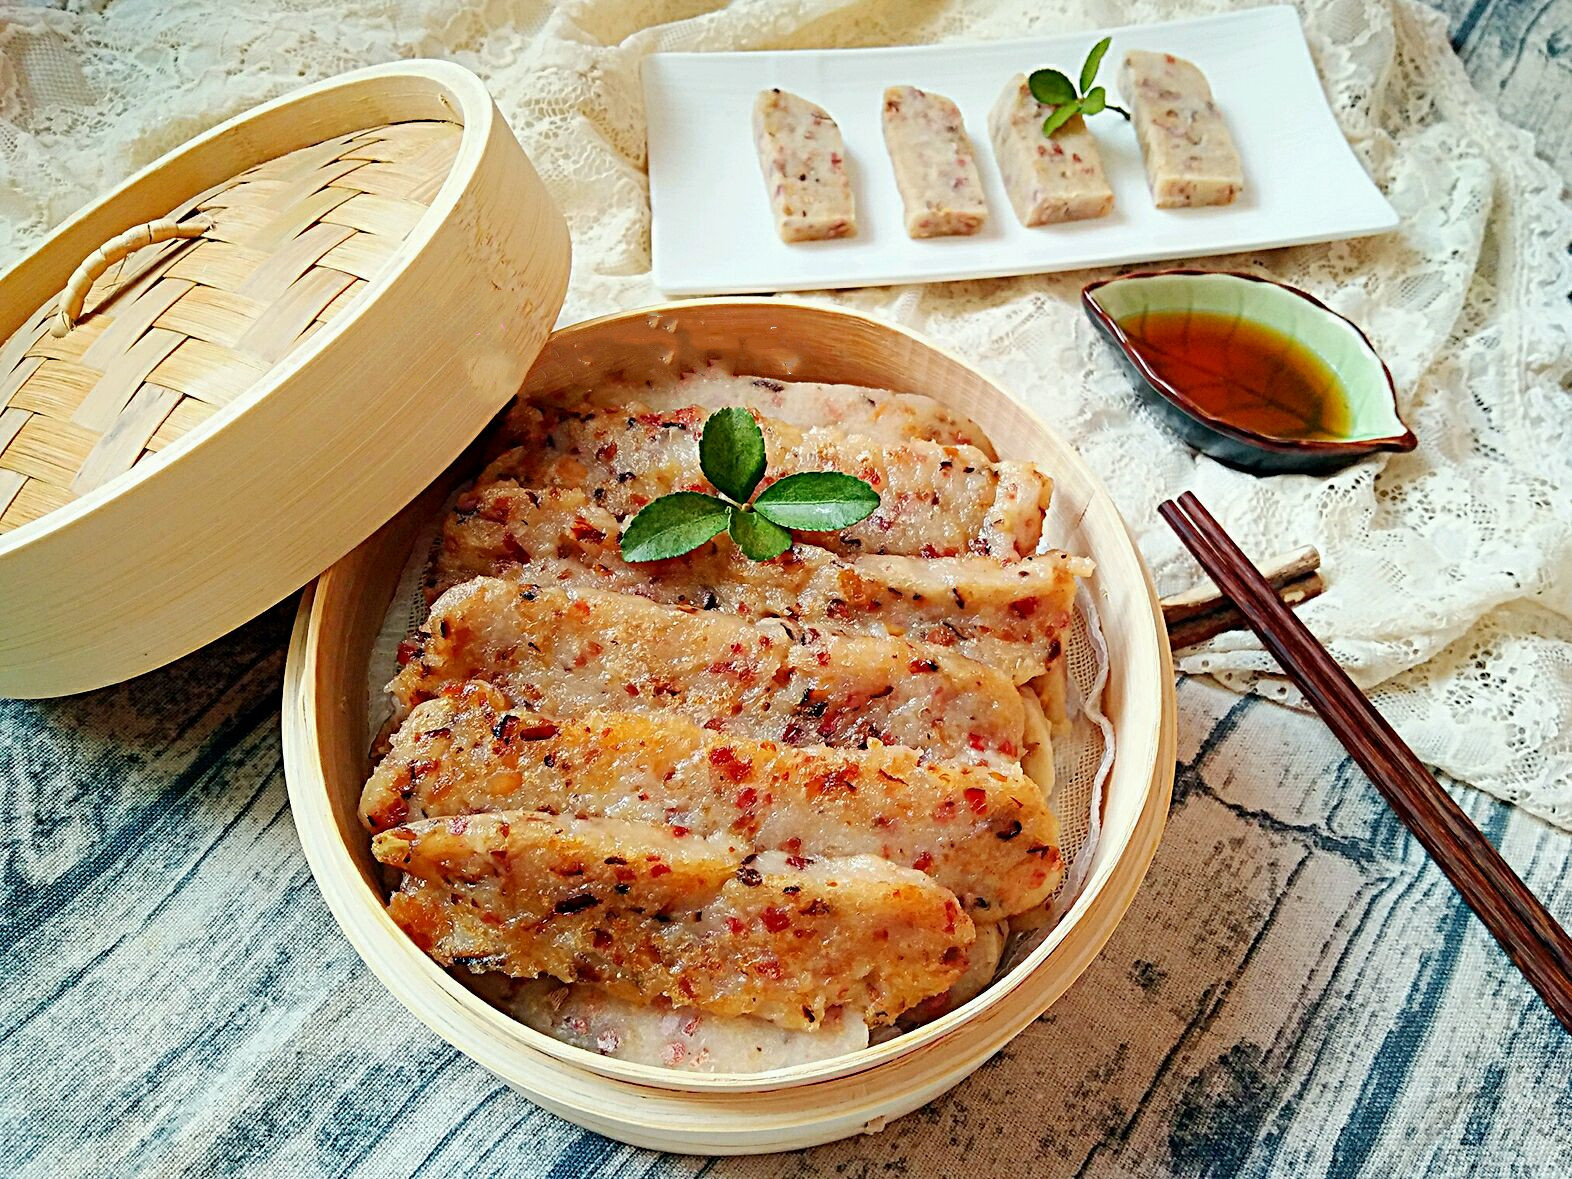 ZapPaLang: 港式煎萝卜糕 Hong Kong style fried radish cake